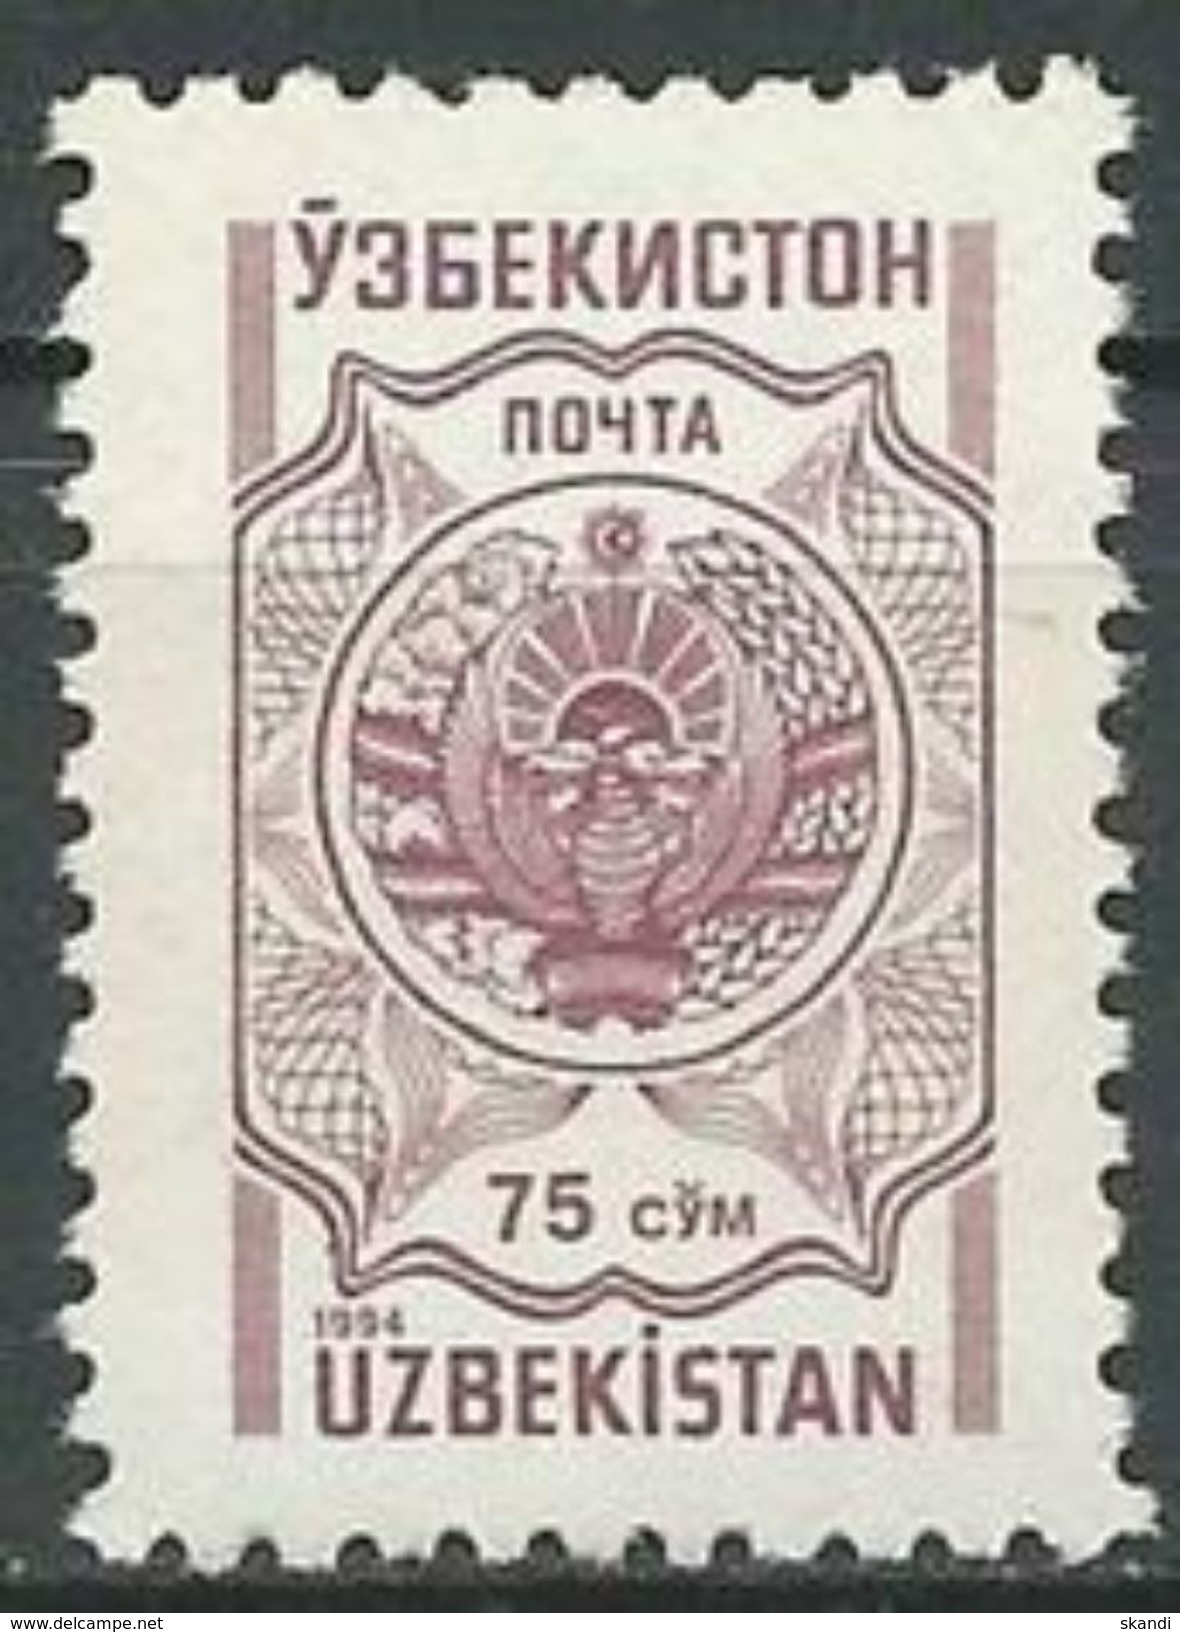 USBEKISTAN 1994 MI-NR. 43 ** MNH - Usbekistan